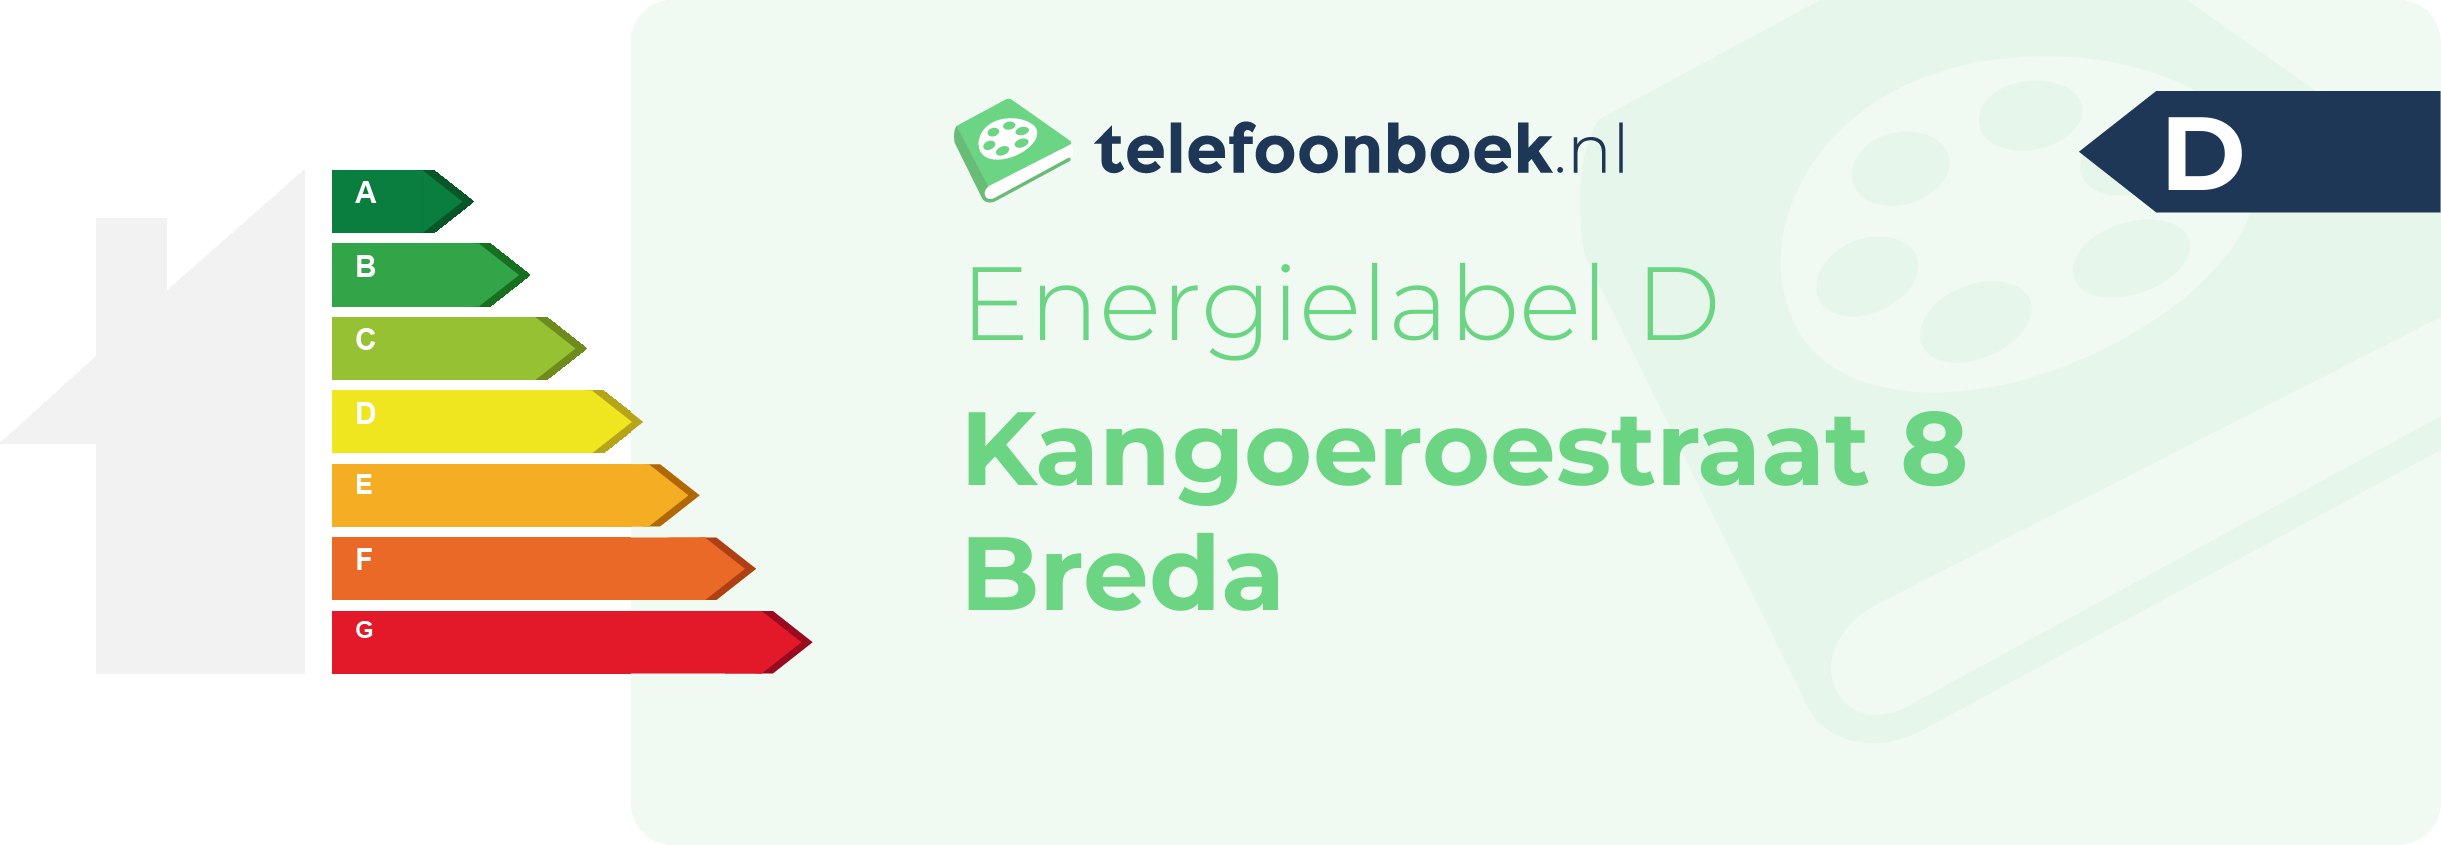 Energielabel Kangoeroestraat 8 Breda